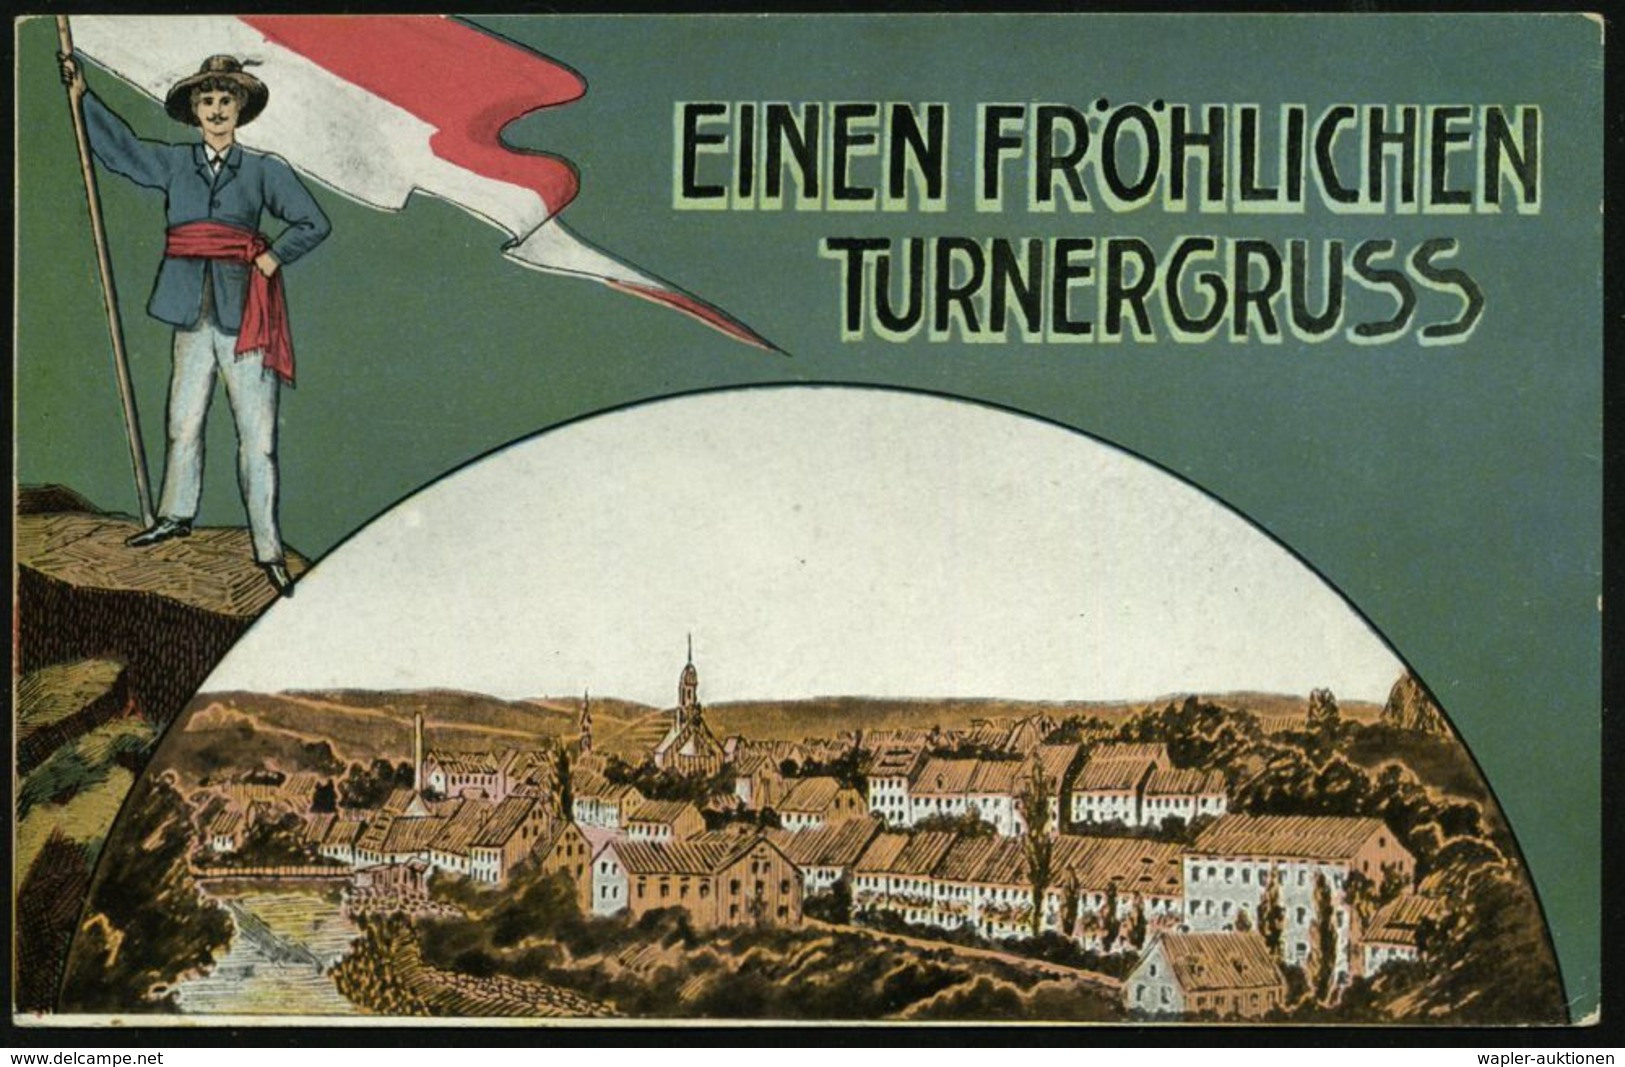 Rosswein 1911 (26.6.) Color-Ak.: EINEN FRÖHLICHEN TURNERGRUSS, Mulden-Zschopautaler "Gauturner" Juni 1911 (Frankatur-Män - Ginnastica